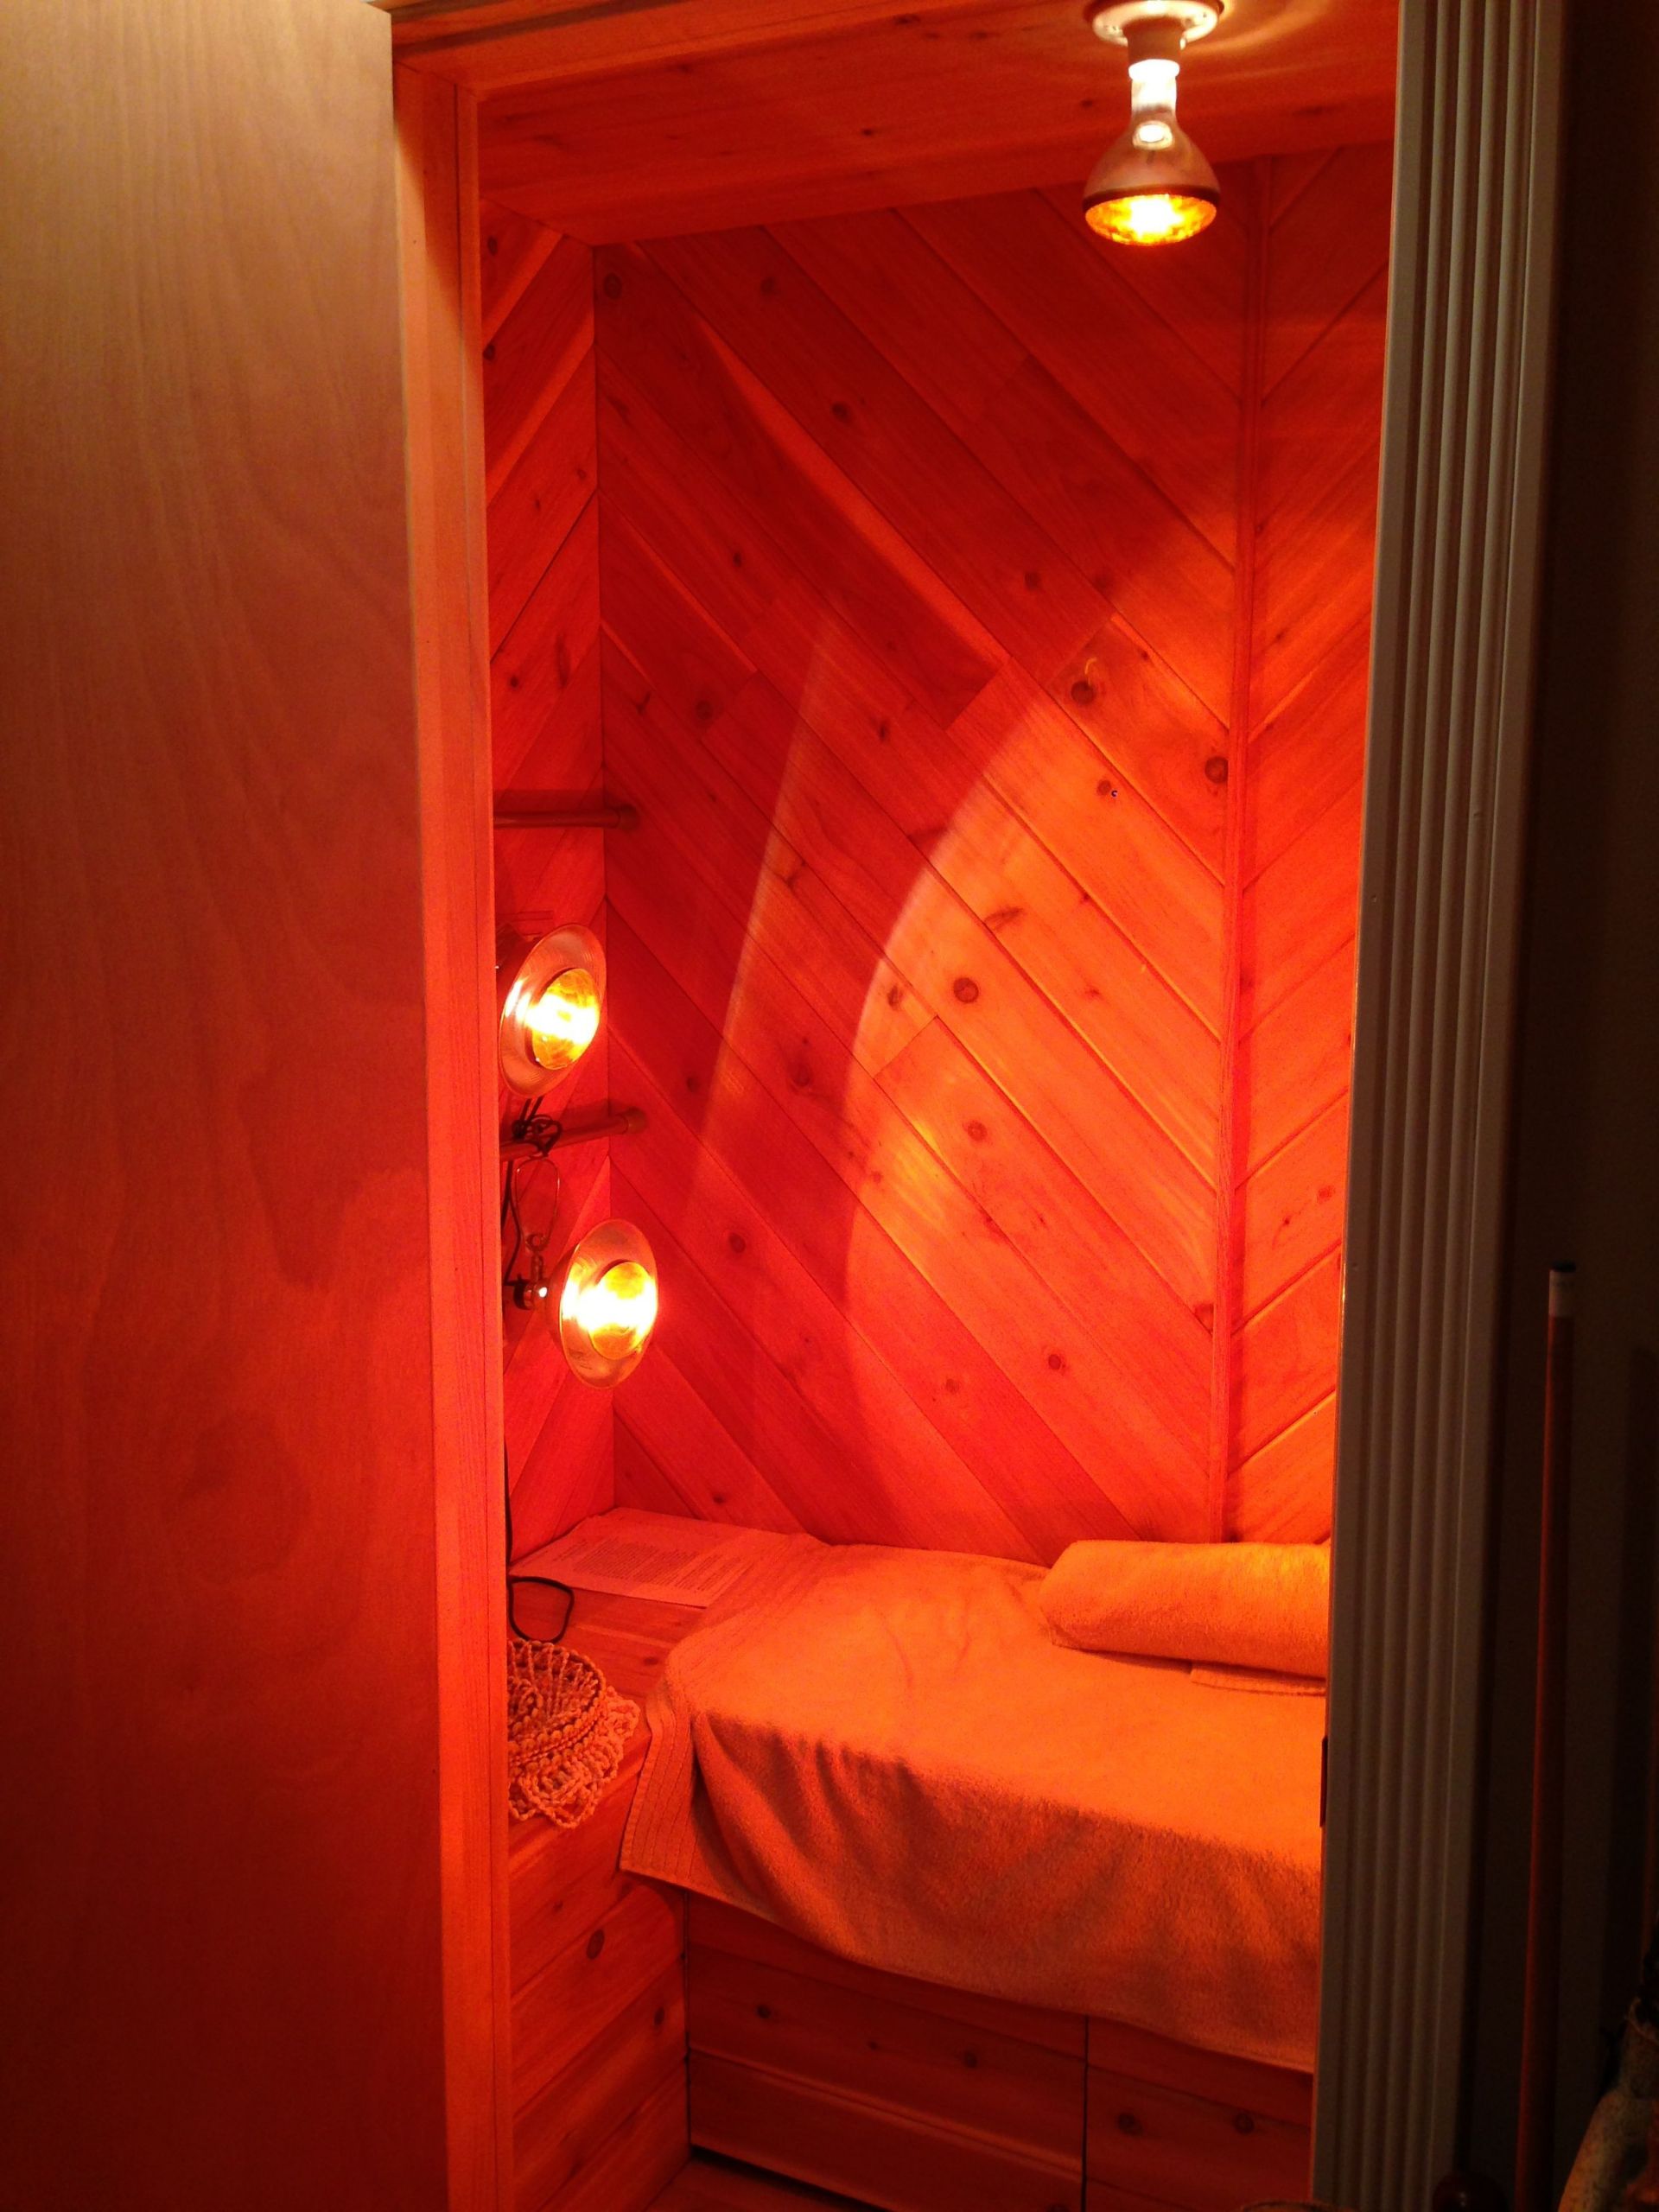 DIY Near Infrared Sauna Plans
 Basement closet turned to near infrared sauna room